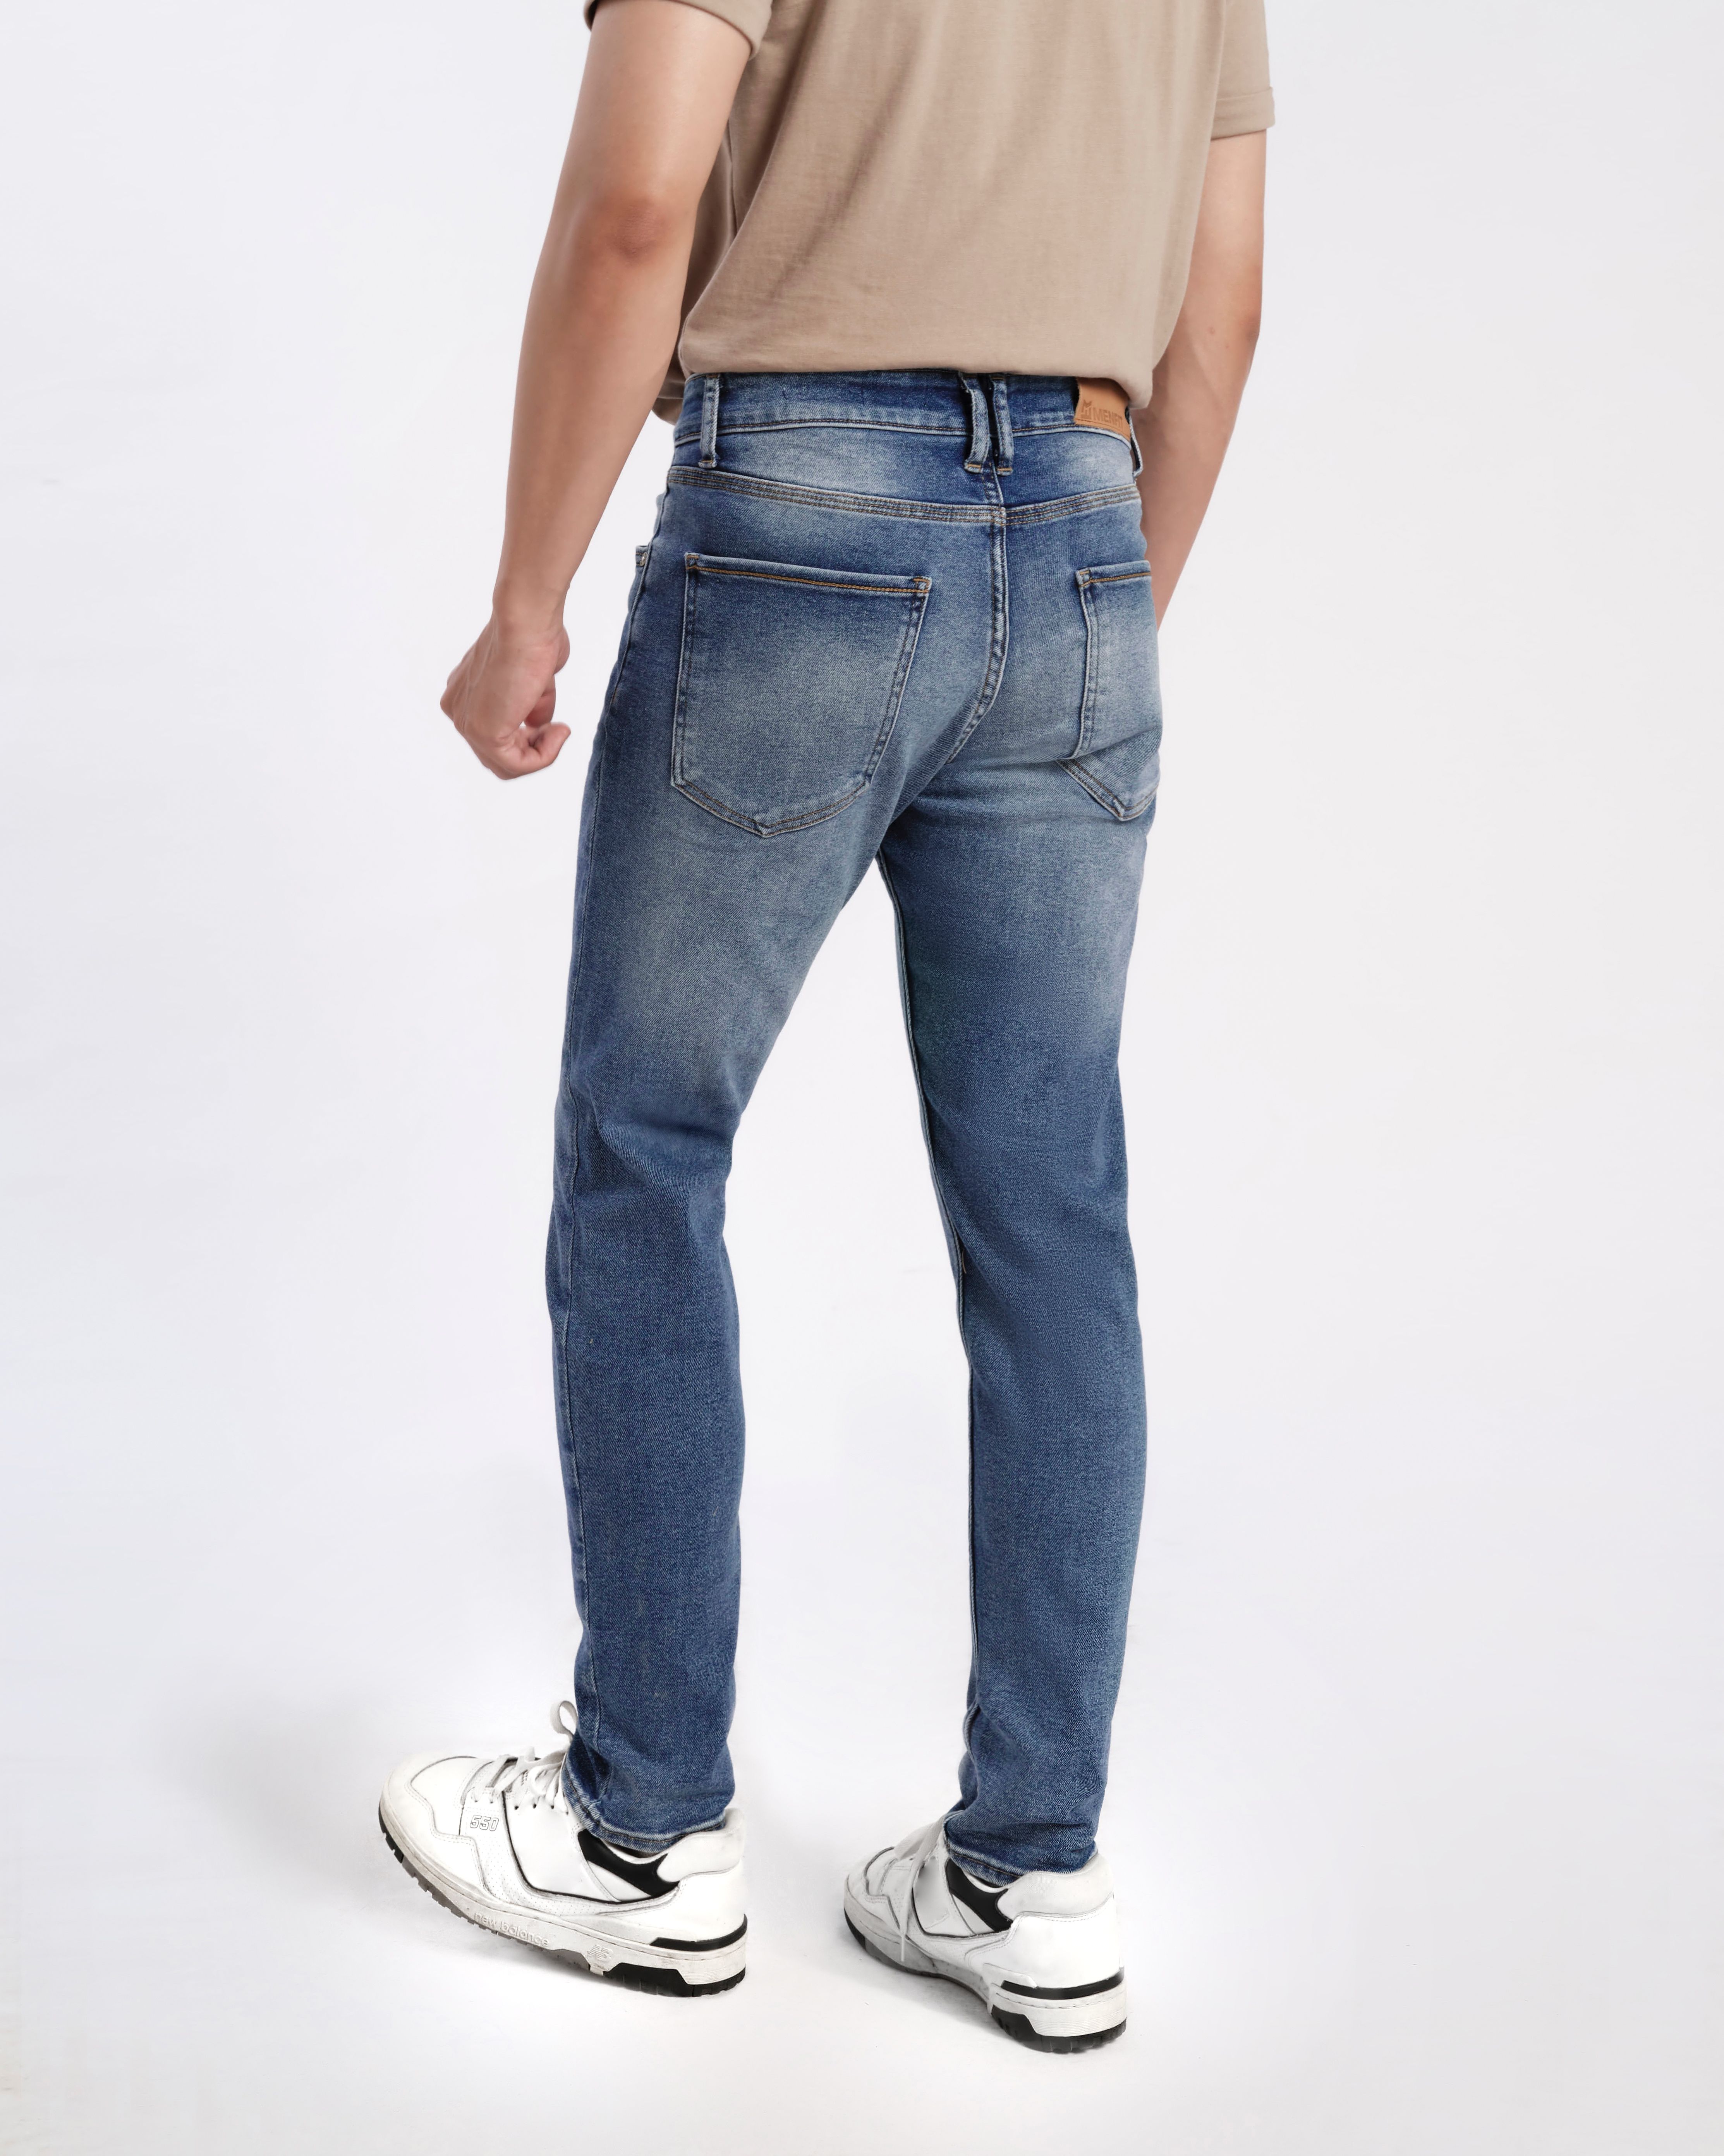 Quần jean nam xanh cao cấp MENFIT 0532 chất denim co giãn nhẹ 2 chiều, chuẩn form, thời trang